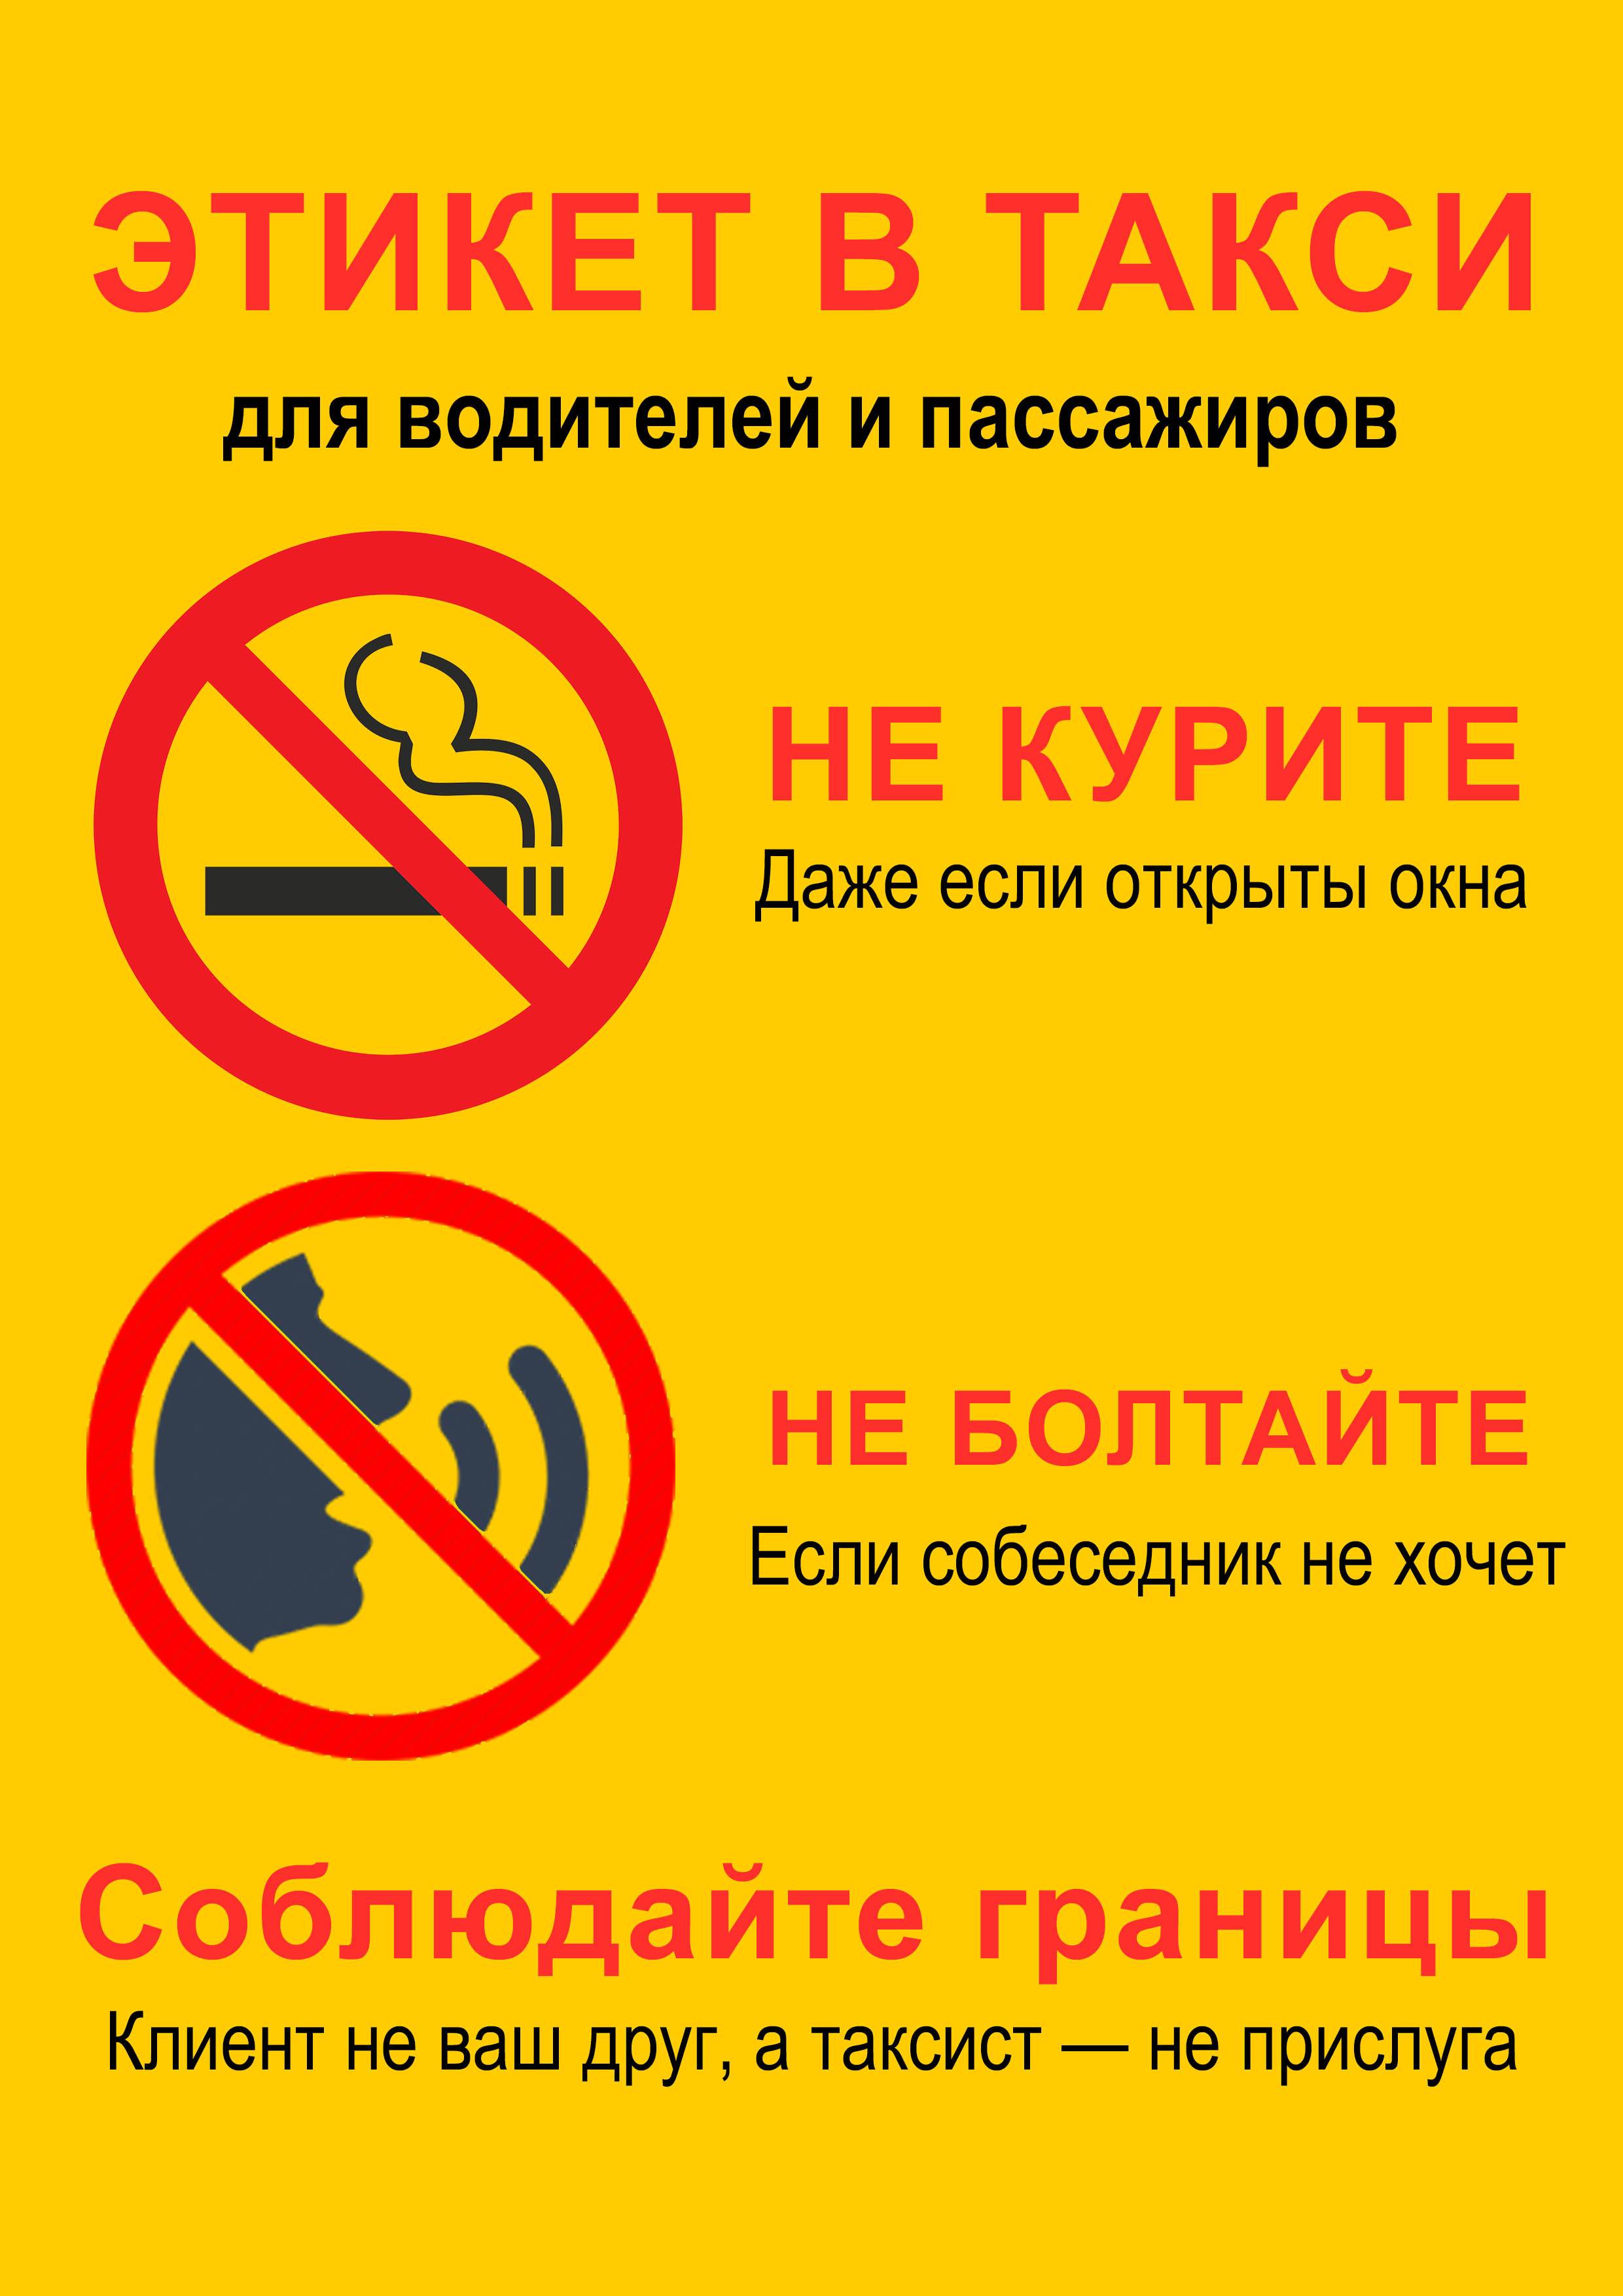 Обязаны ли водители и пассажиры носить маски в такси - толк 24.11.2020